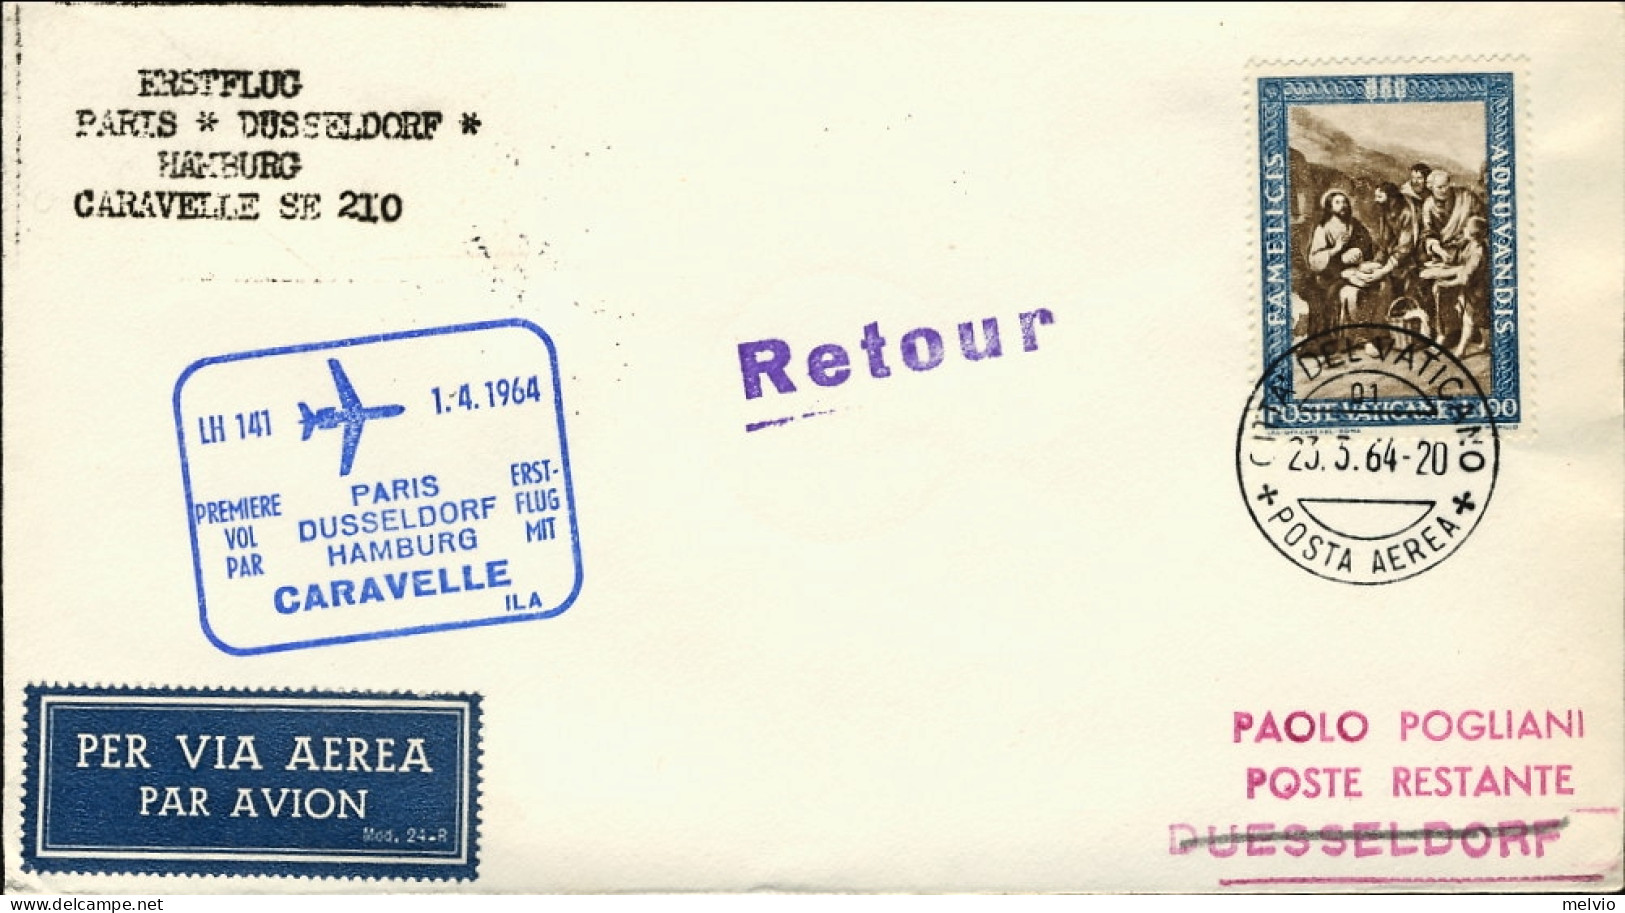 Vaticano-1964 I^volo Caravelle LH 141 Parigi Dusseldorf Amburgo Del 1 Aprile - Poste Aérienne